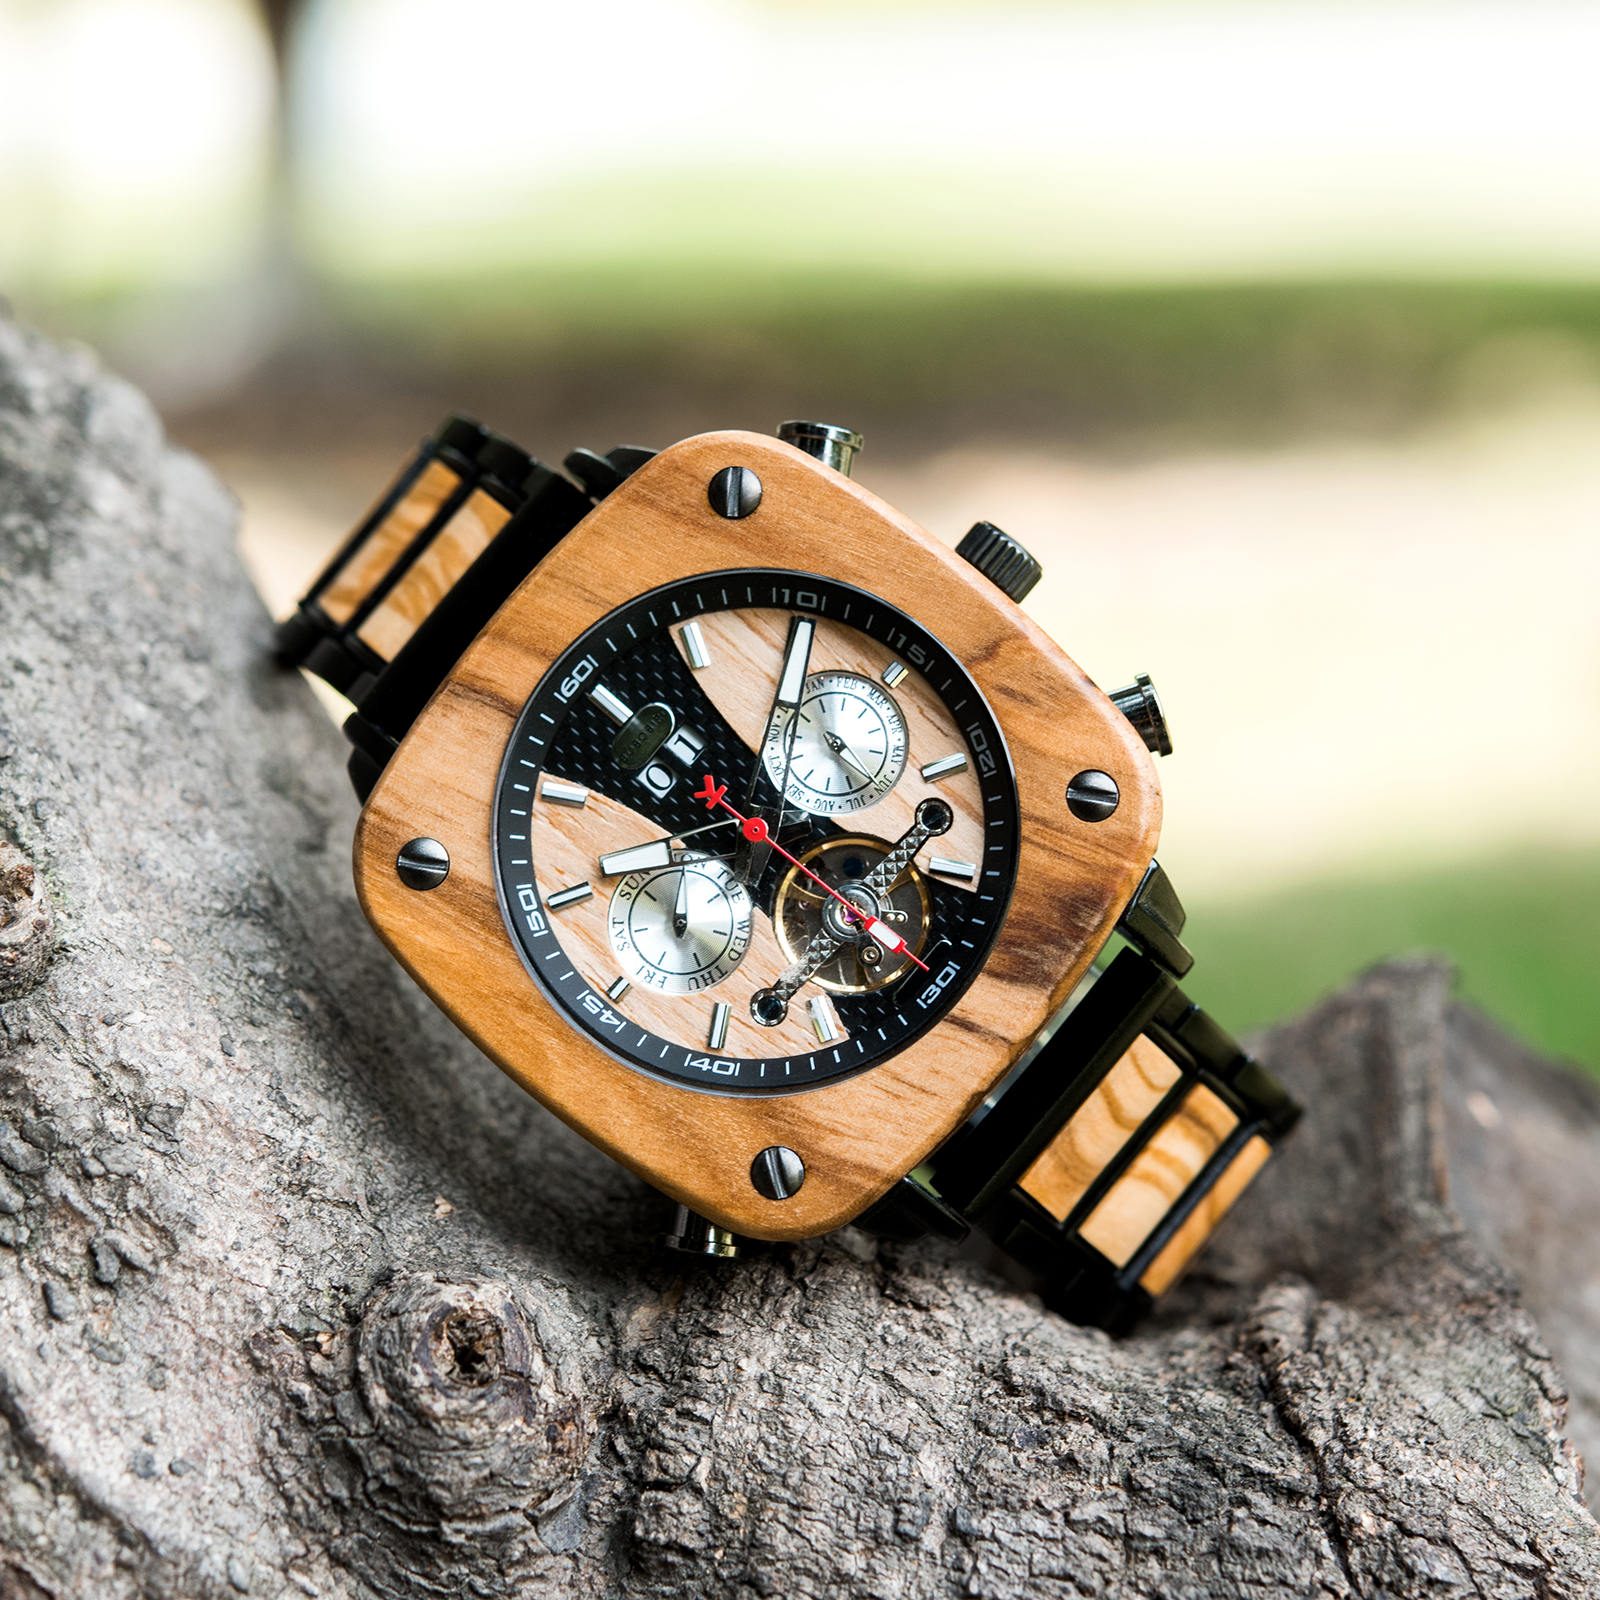 ○日本正規品○ Emibele メンズ 木製腕時計 多機能 3つのサブダイヤル 